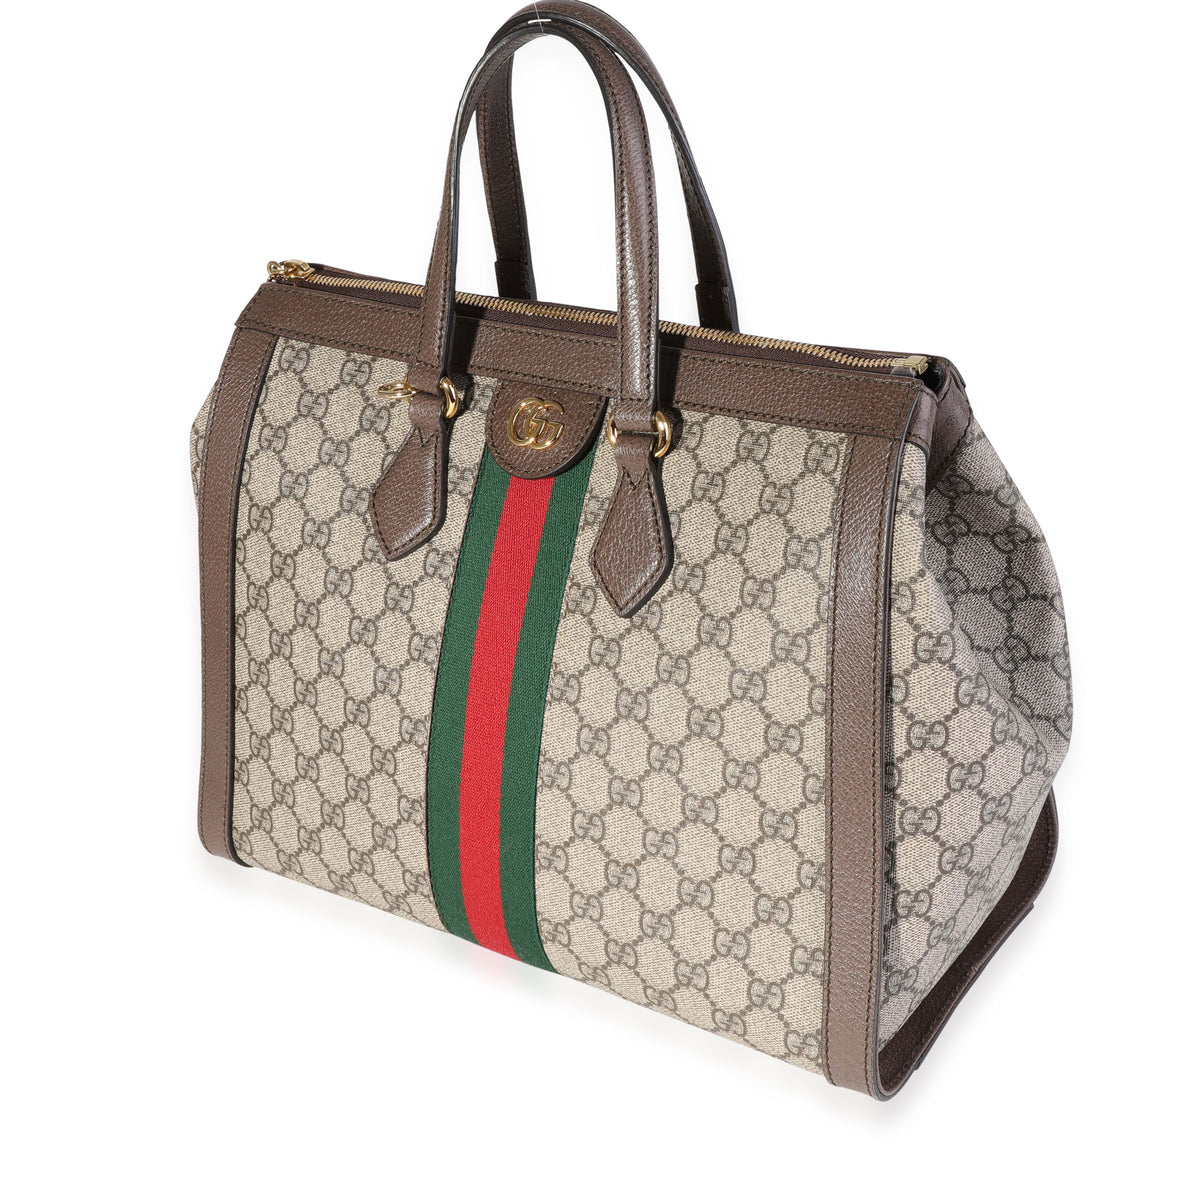 Gucci GG Supreme & Web Medium Ophidia Tote Bag